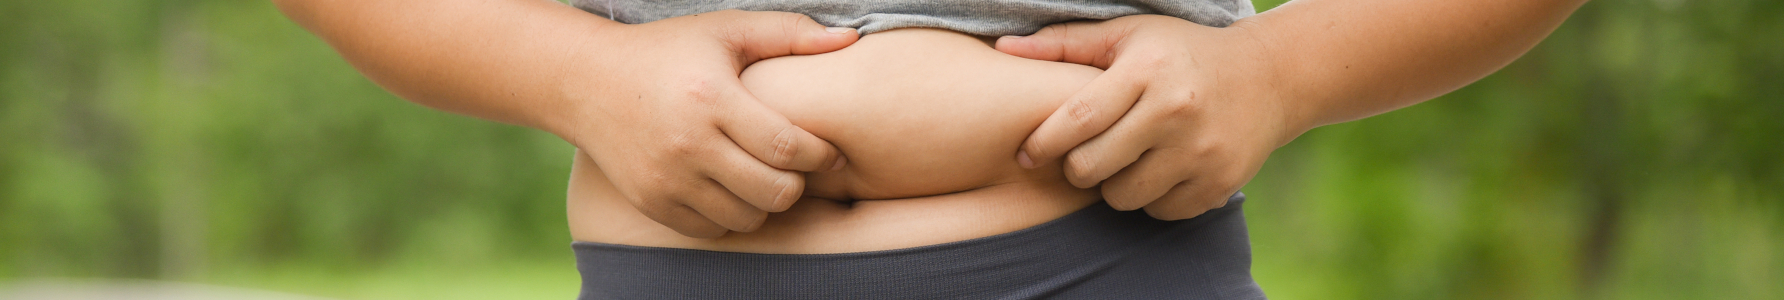 Skinny fat - kobieta w stroju sportowym trzymająca się za fałdkę tłuszczu na brzuchu